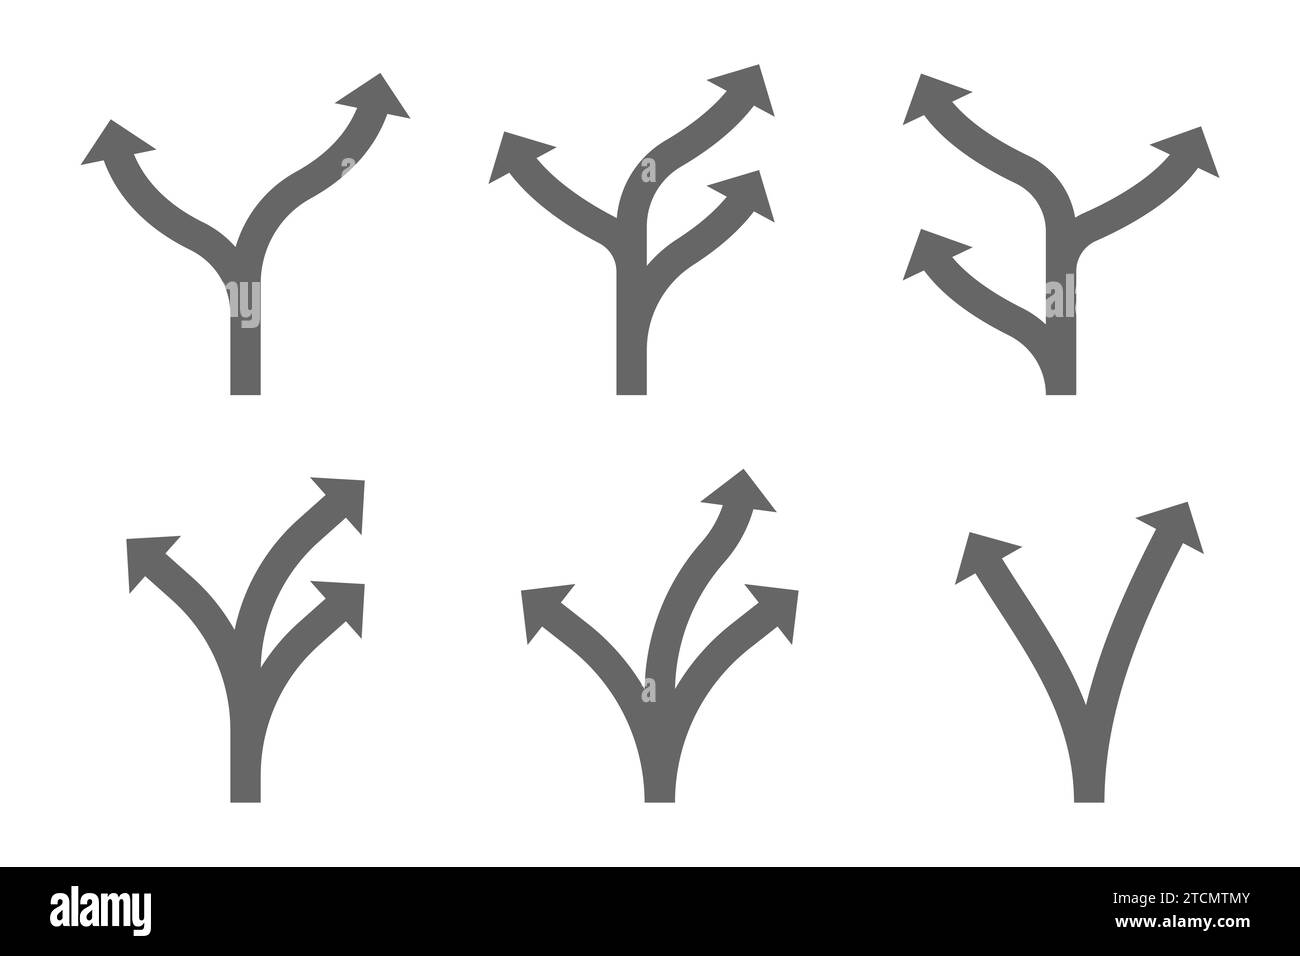 Indicazione freccia direzione direzione. Set di icone freccia Illustrazione Vettoriale